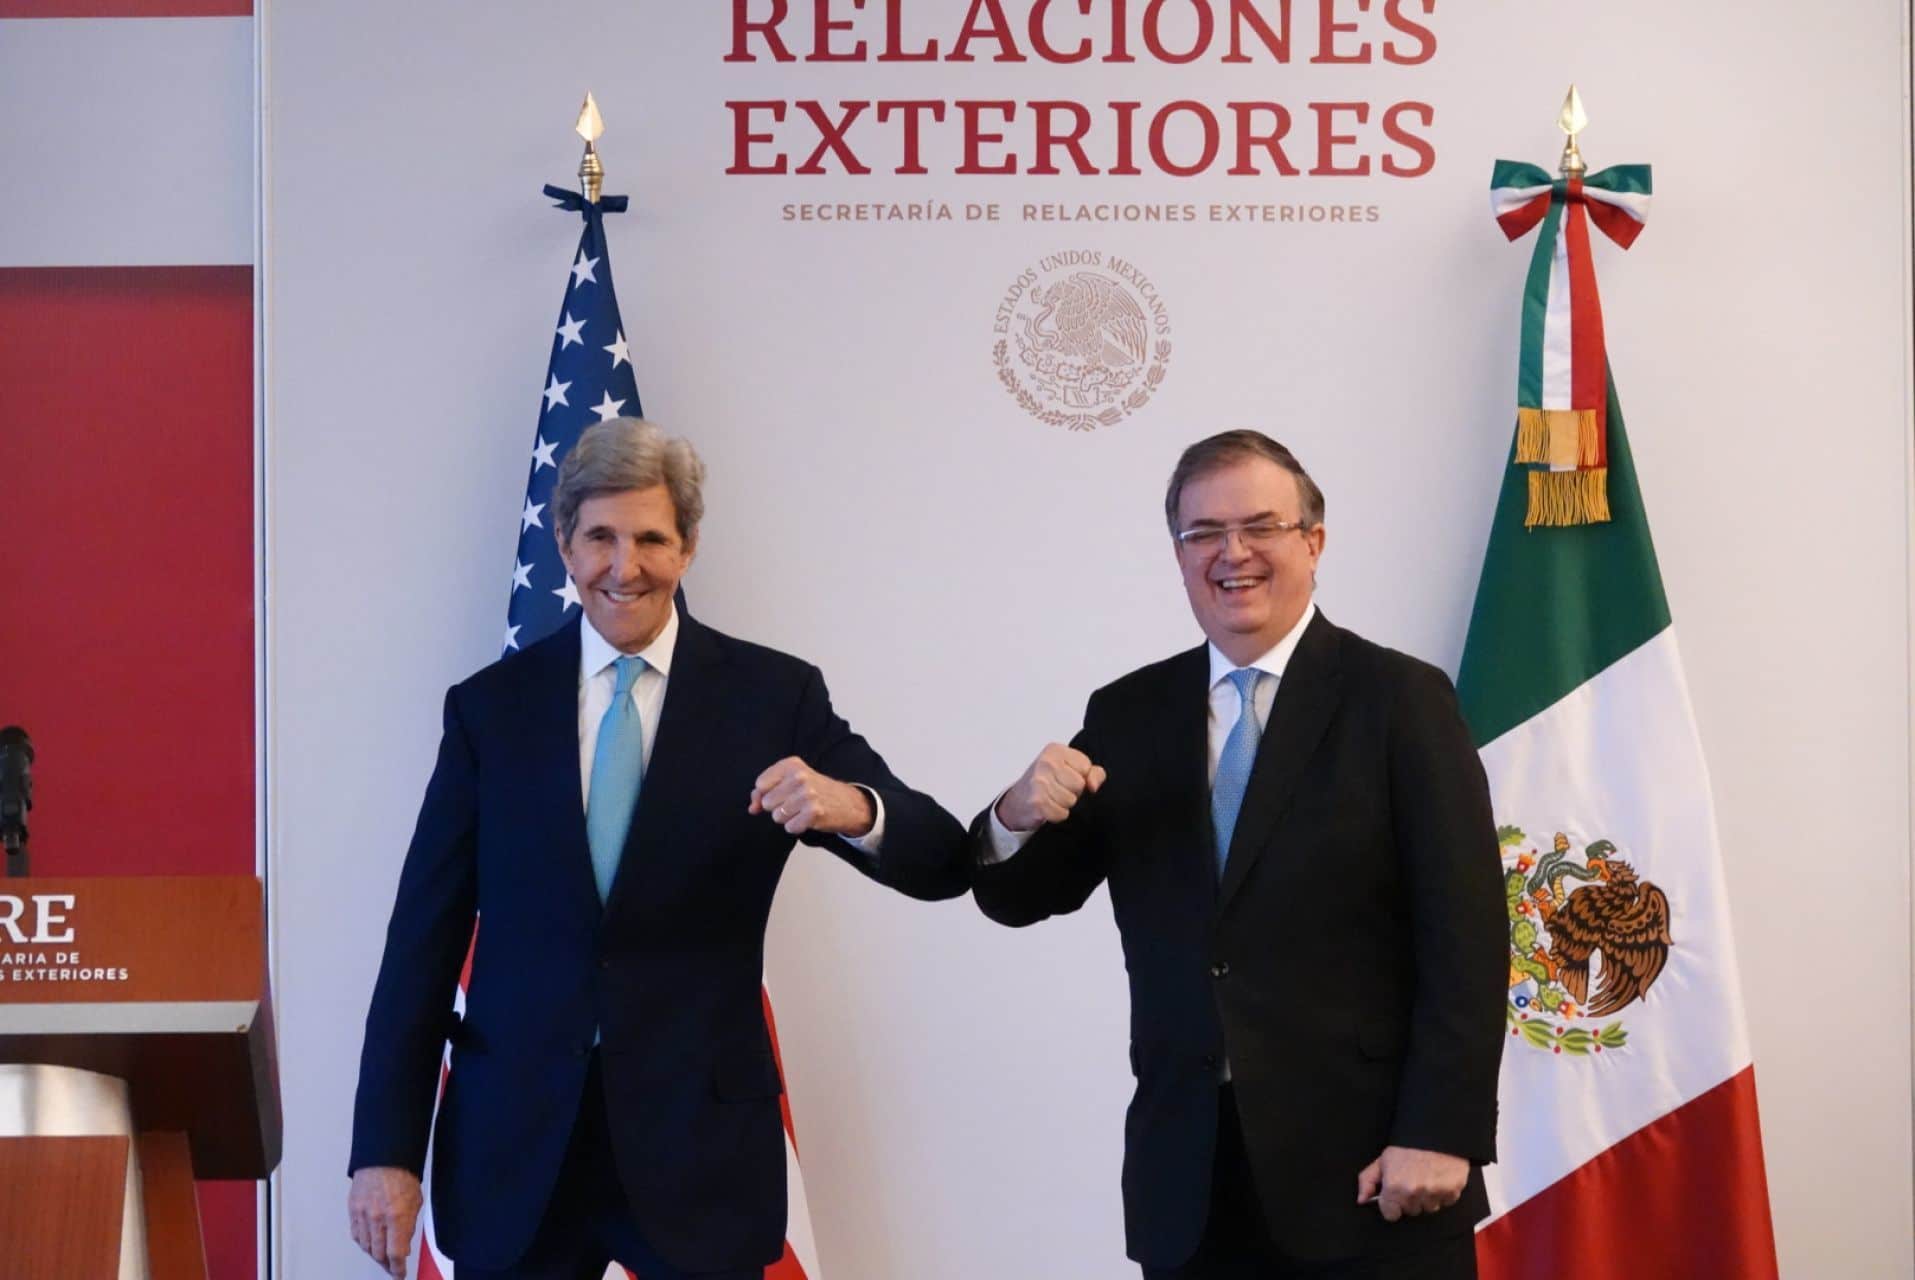 Jhon Kerry, enviado presidencial especial para el clima de los Estados Unidos, y Marcelo Ebrard, secretario de Relaciones Exteriores, se saludaron durante un encuentro realizado en la Secretaría de Relaciones Exteriores (Cuartoscuro)